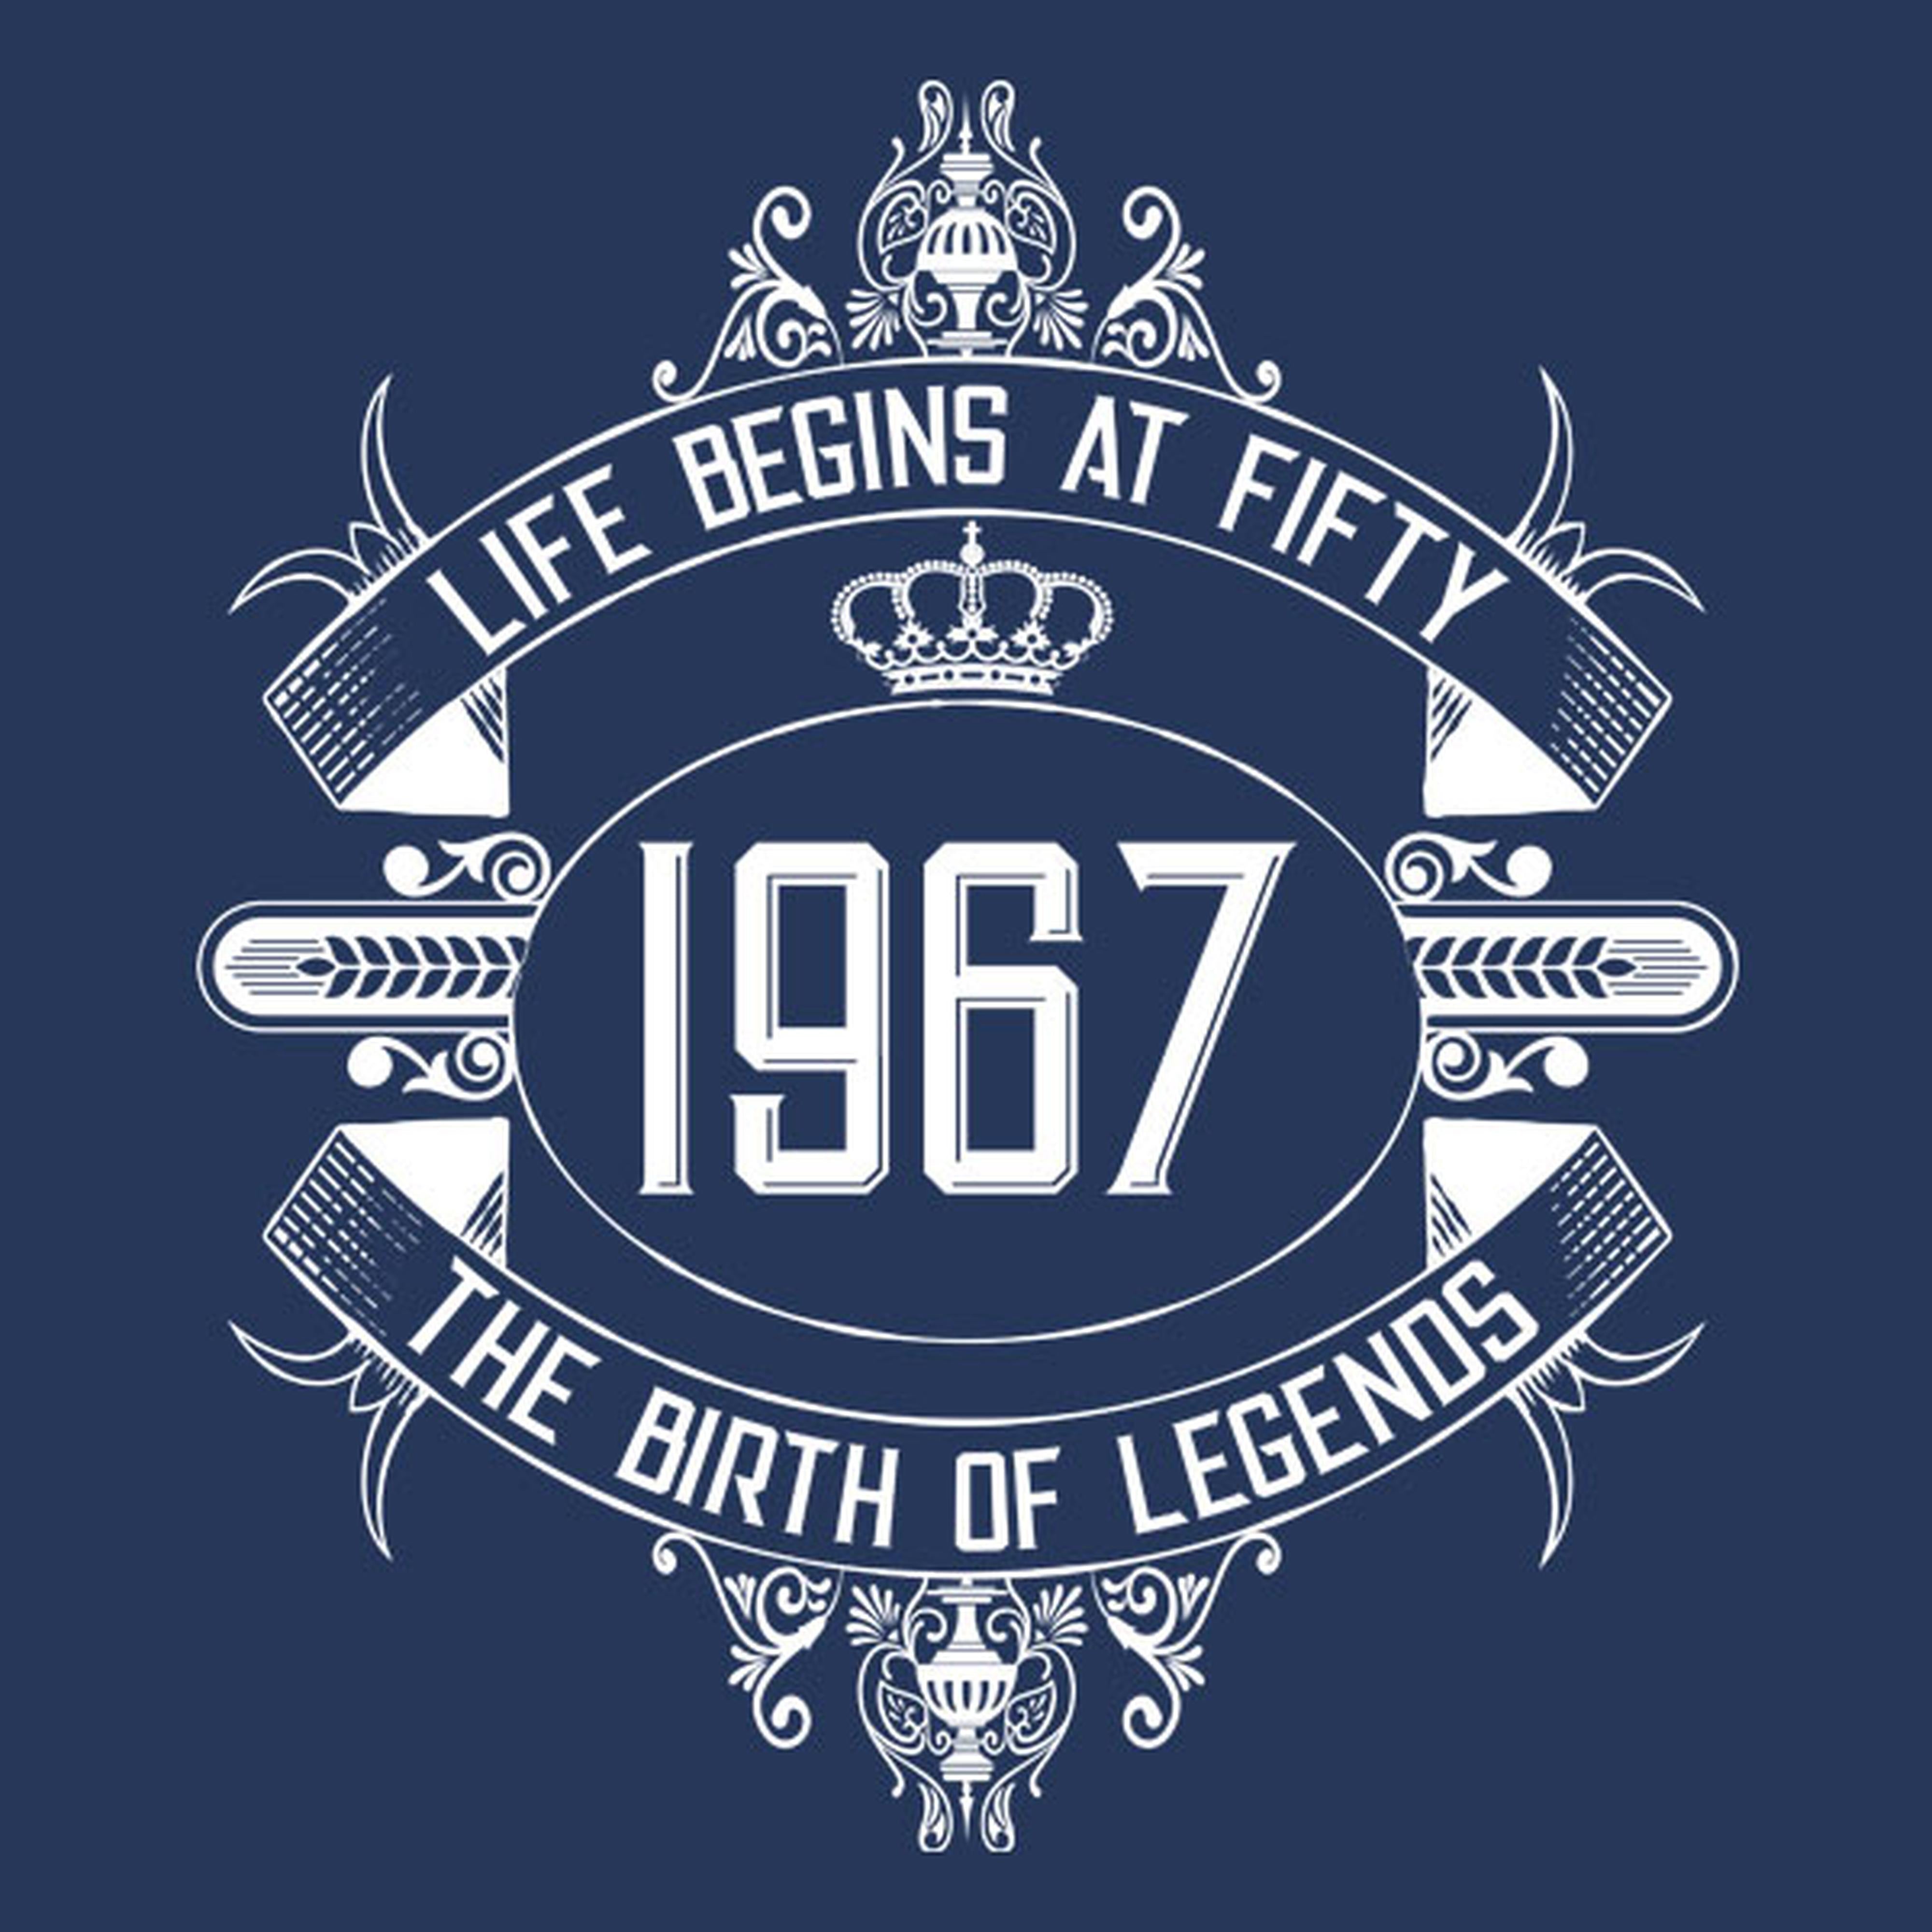 Life begins at 50 - T-shirt